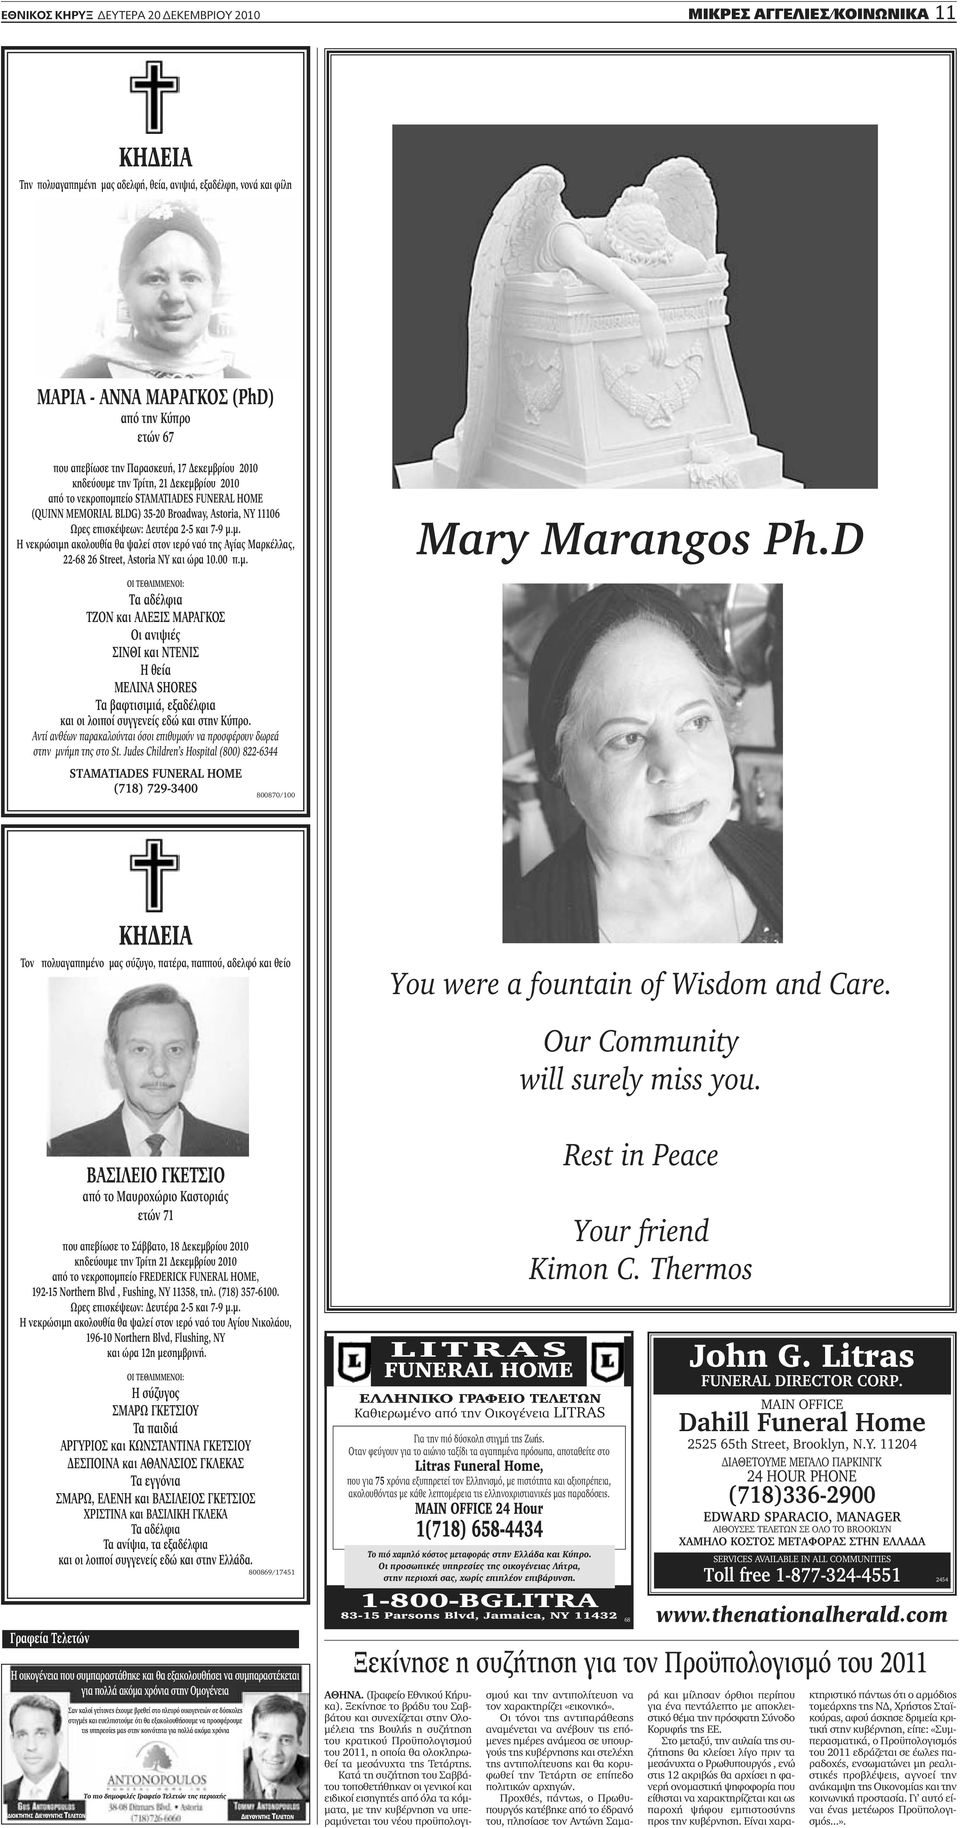 2-5 και 7-9 μ.μ. Η νεκρώσιμη ακολουθία θα ψαλεί στον ιερό ναό της γίας Μαρκέλλας, 22-68 26 Street, Astoria NY και ώρα 10.00 π.μ. Mary Marangos Ph.